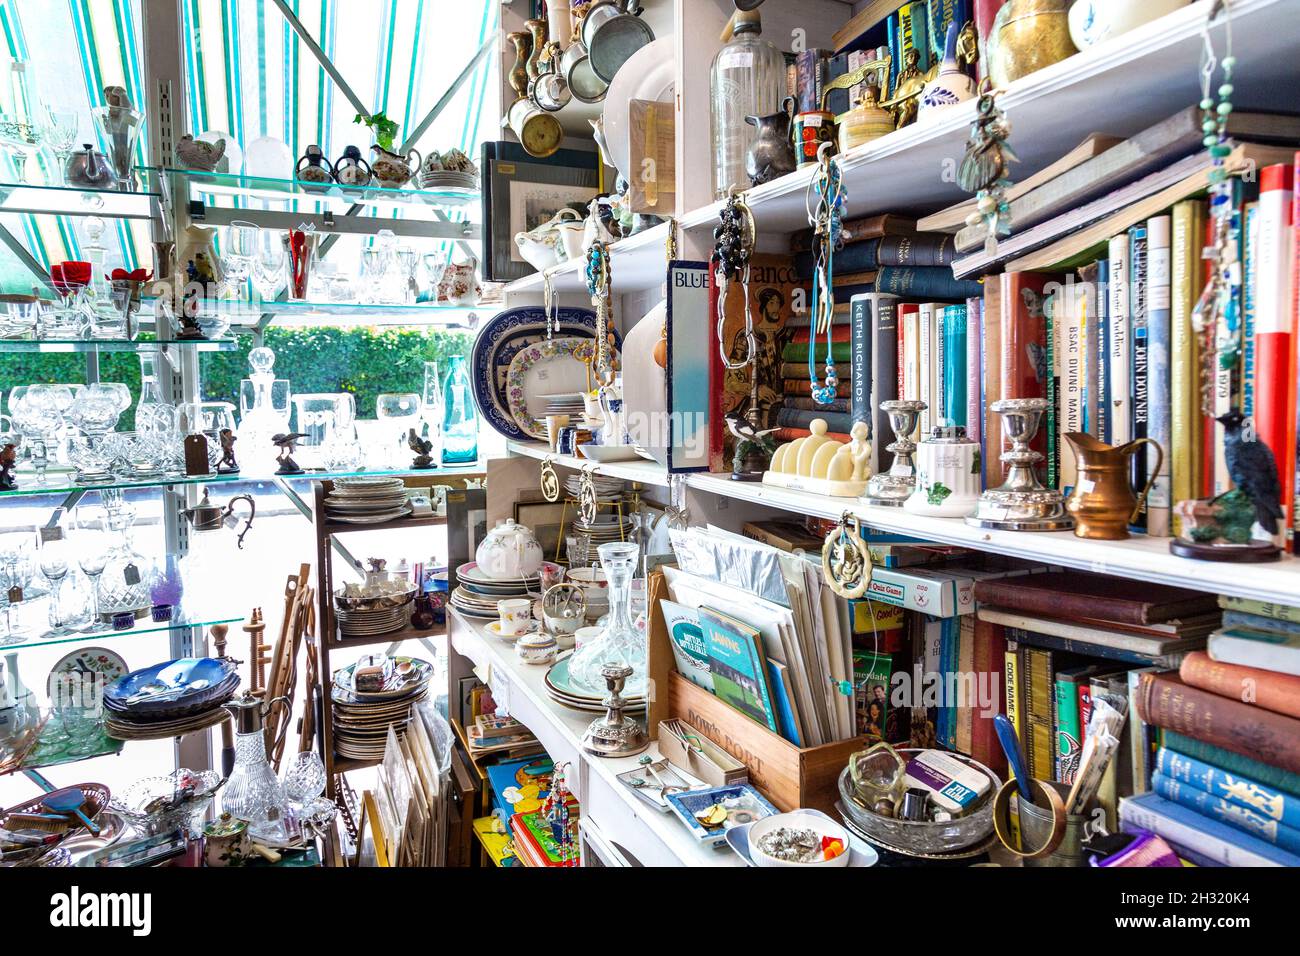 Exposition de verrerie, de livres et de vaisselle dans un magasin d'antiquités (Hampton court Emporium, East Molesey, Royaume-Uni) Banque D'Images